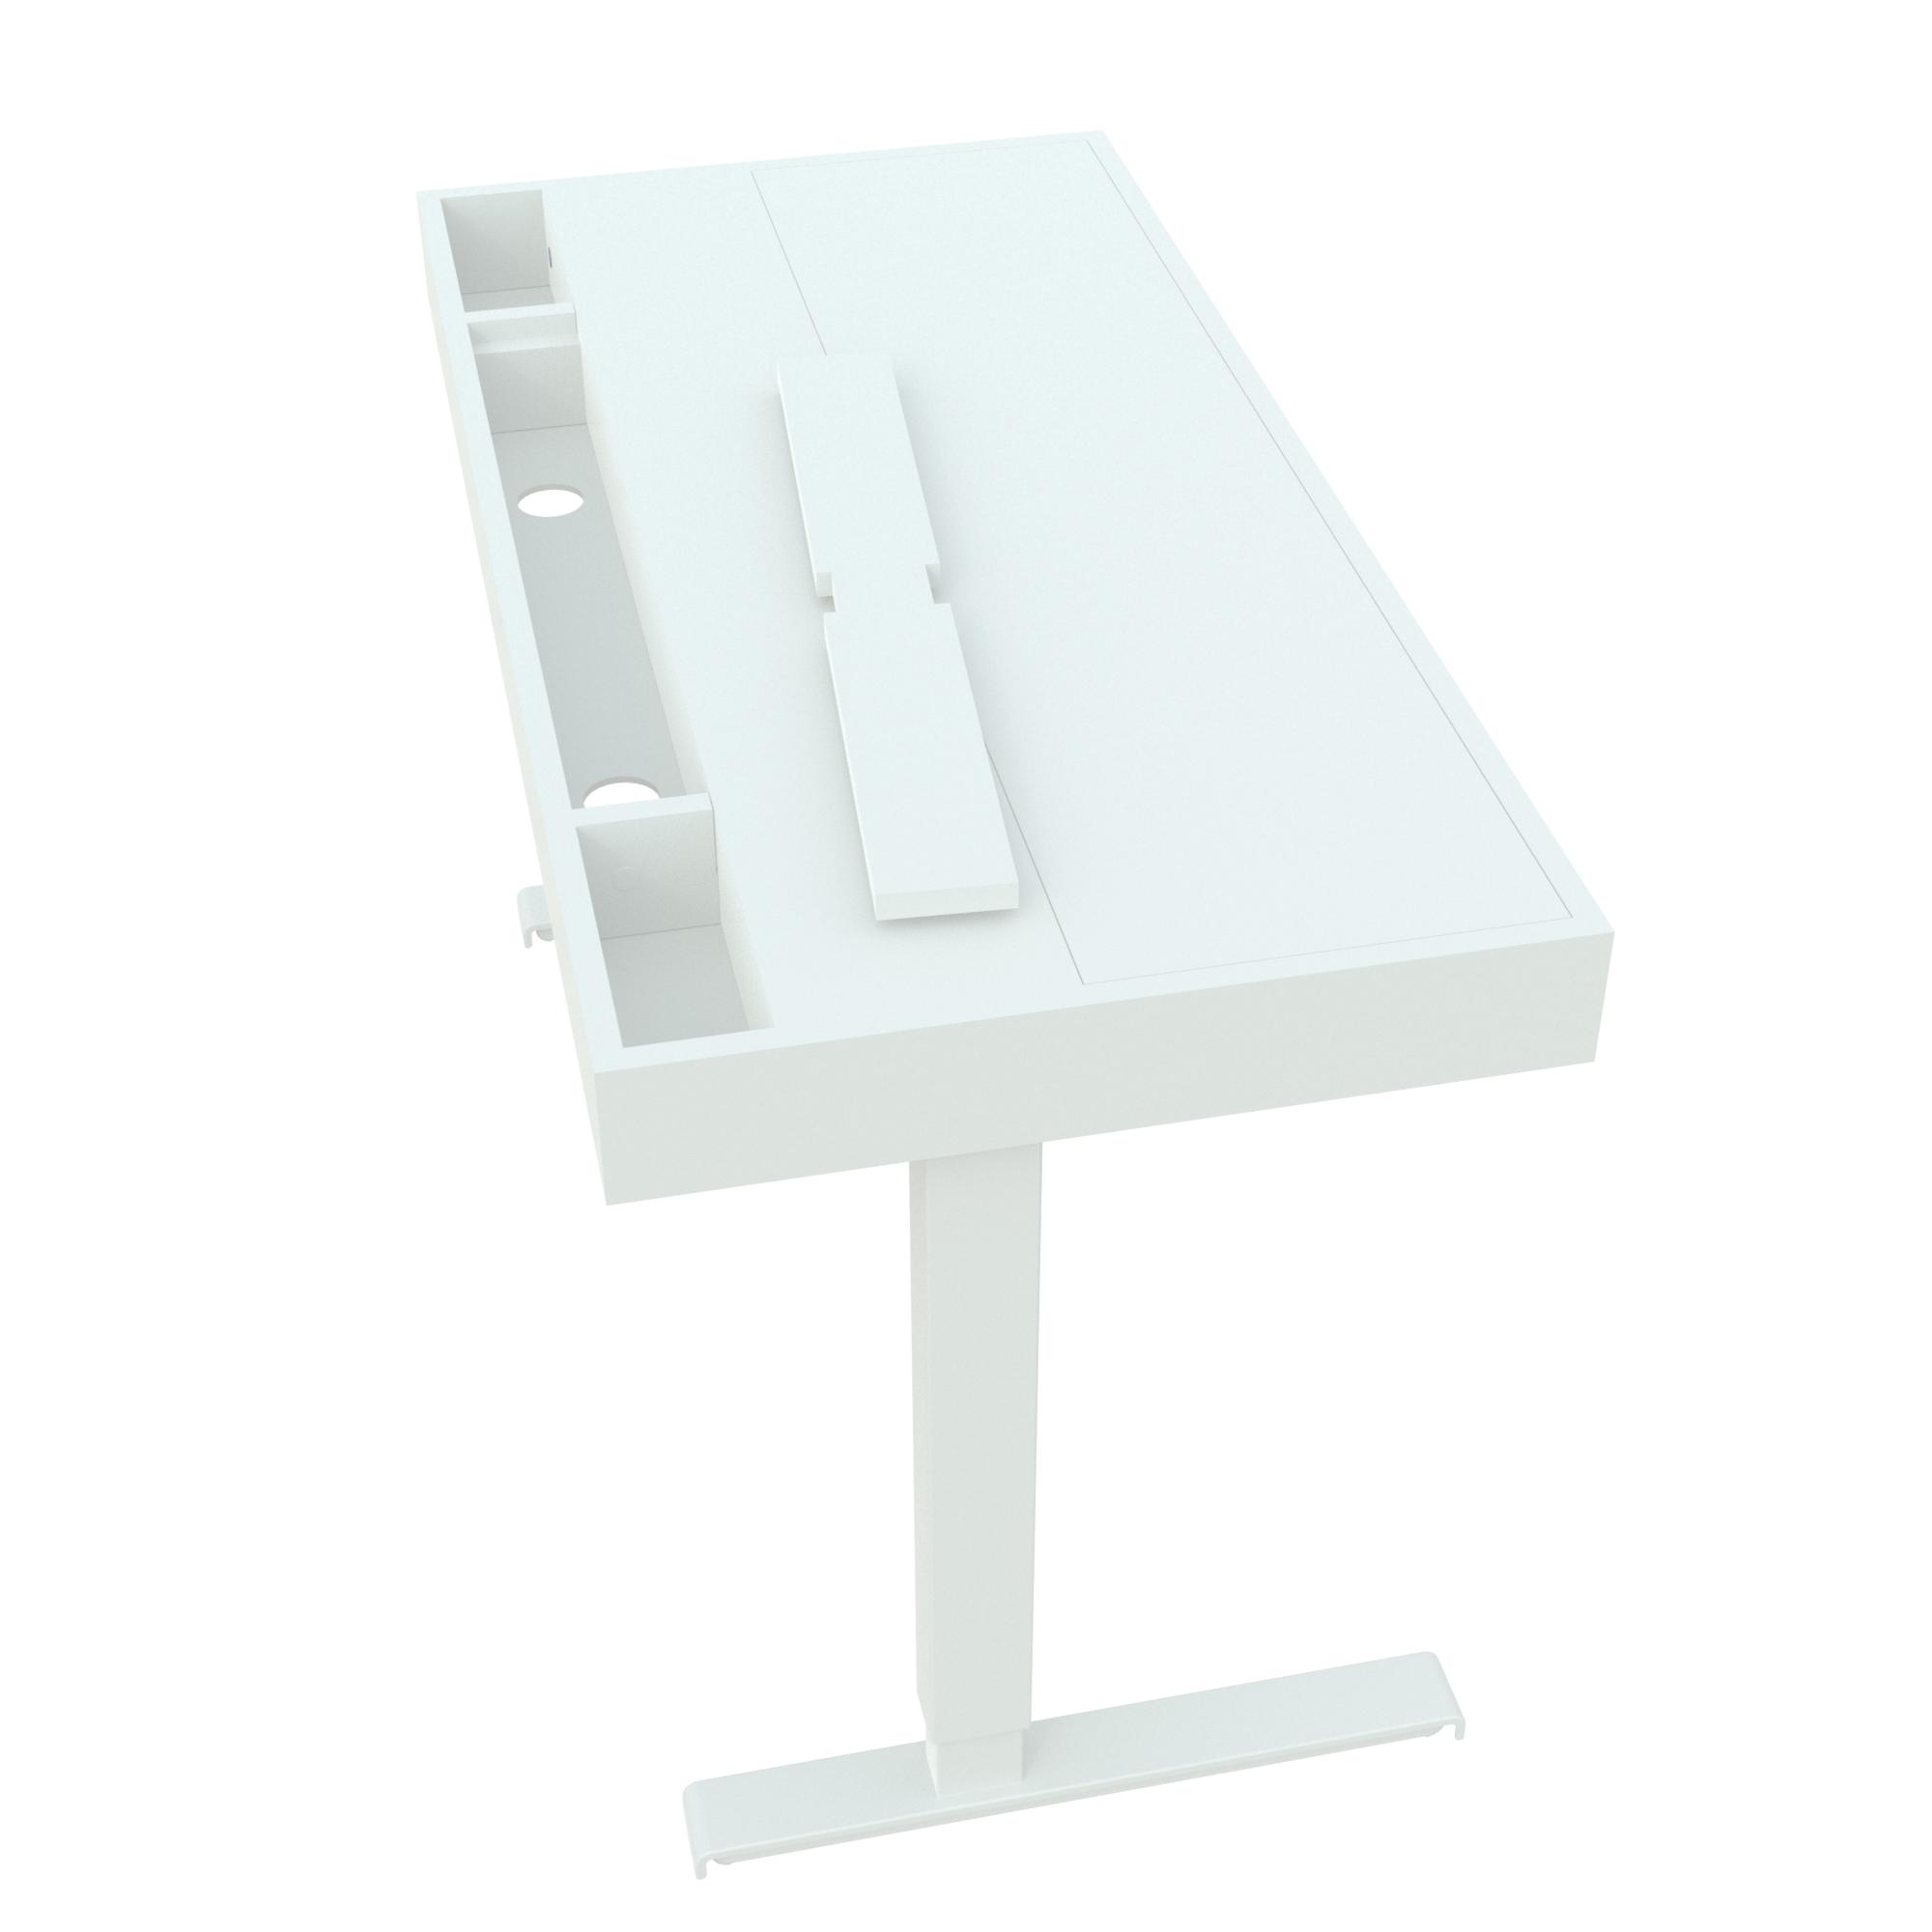 Elektrisch verstelbaar bureau | x cm |  met wit frame